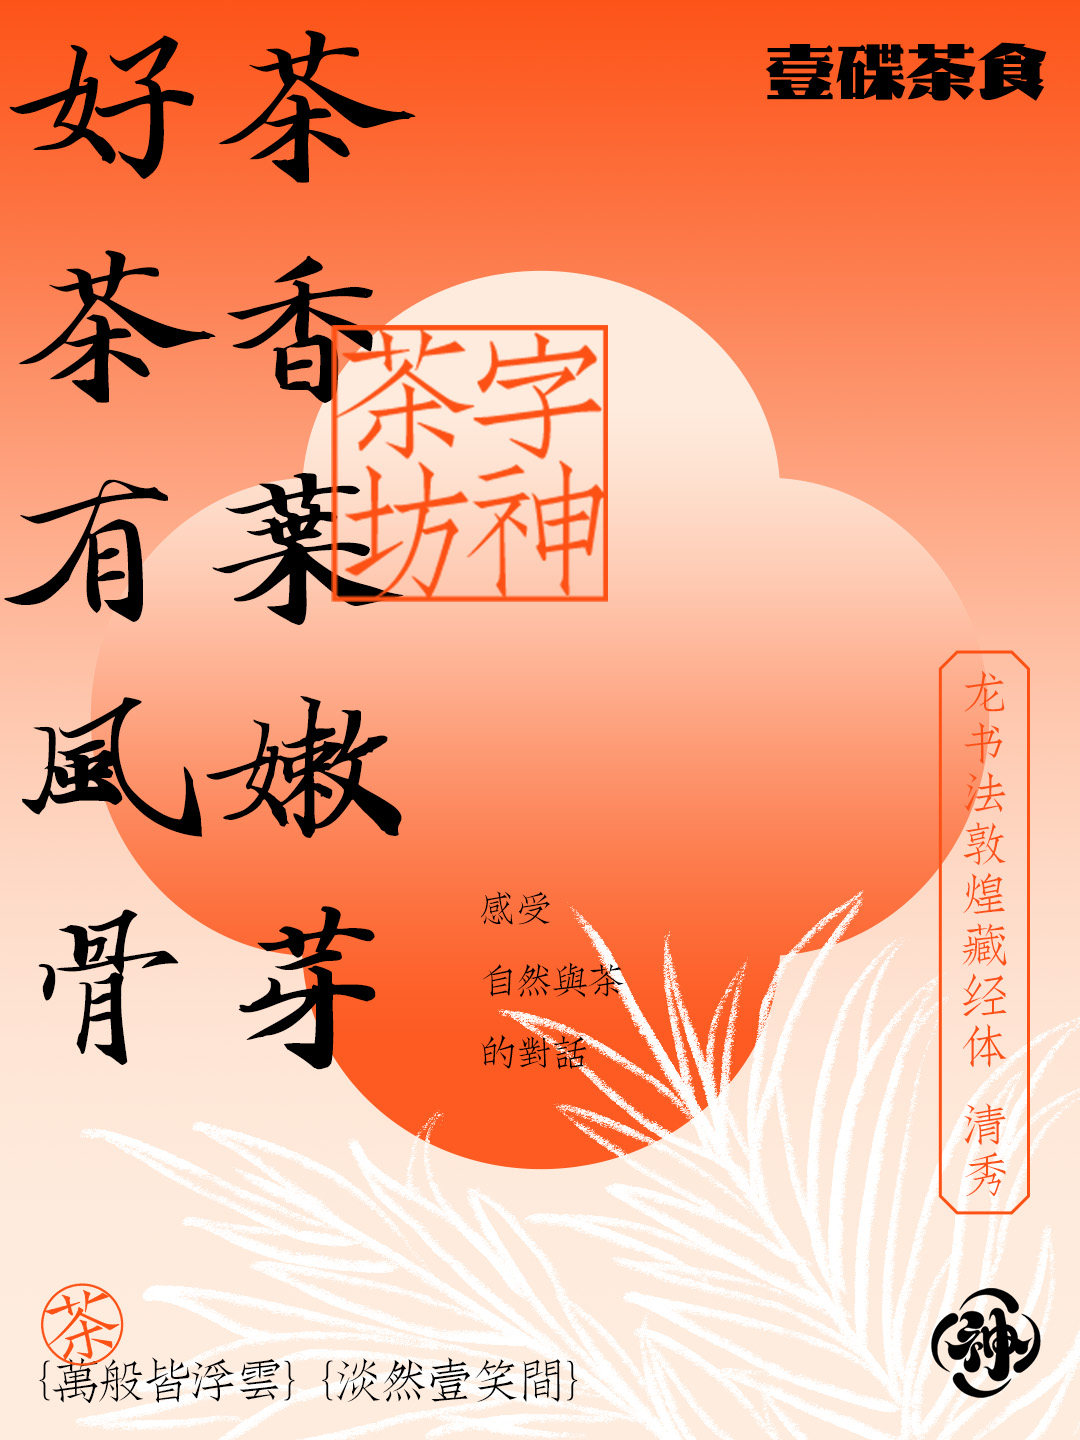 中国茶饮美学字体